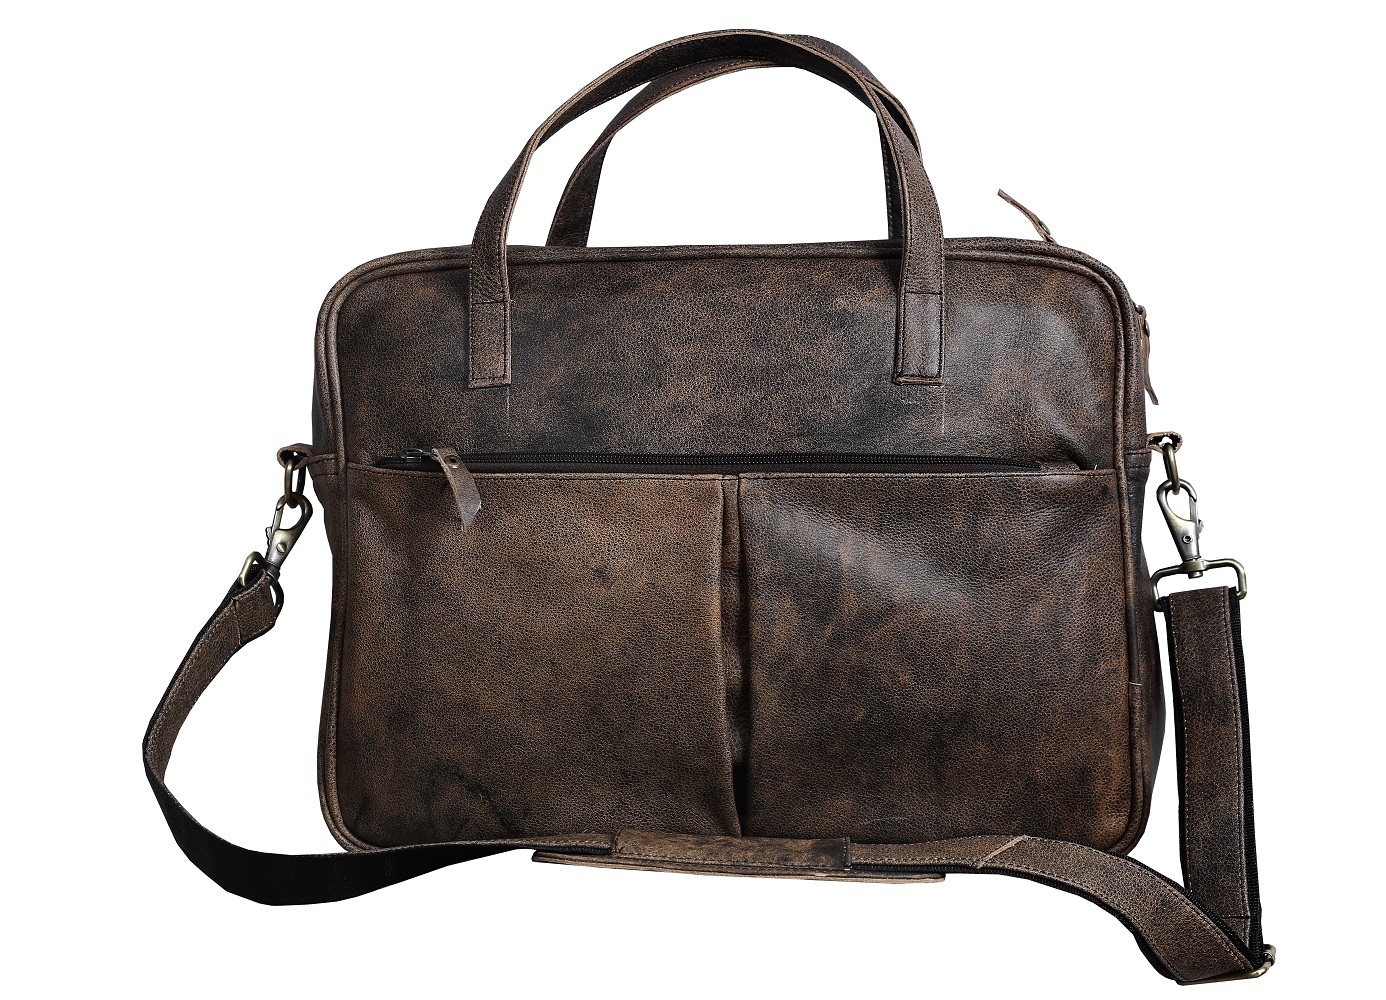 Messenger Leather Bag, Travel Bag, Laptop Cross Body Bag, Handmade Men's Gift,